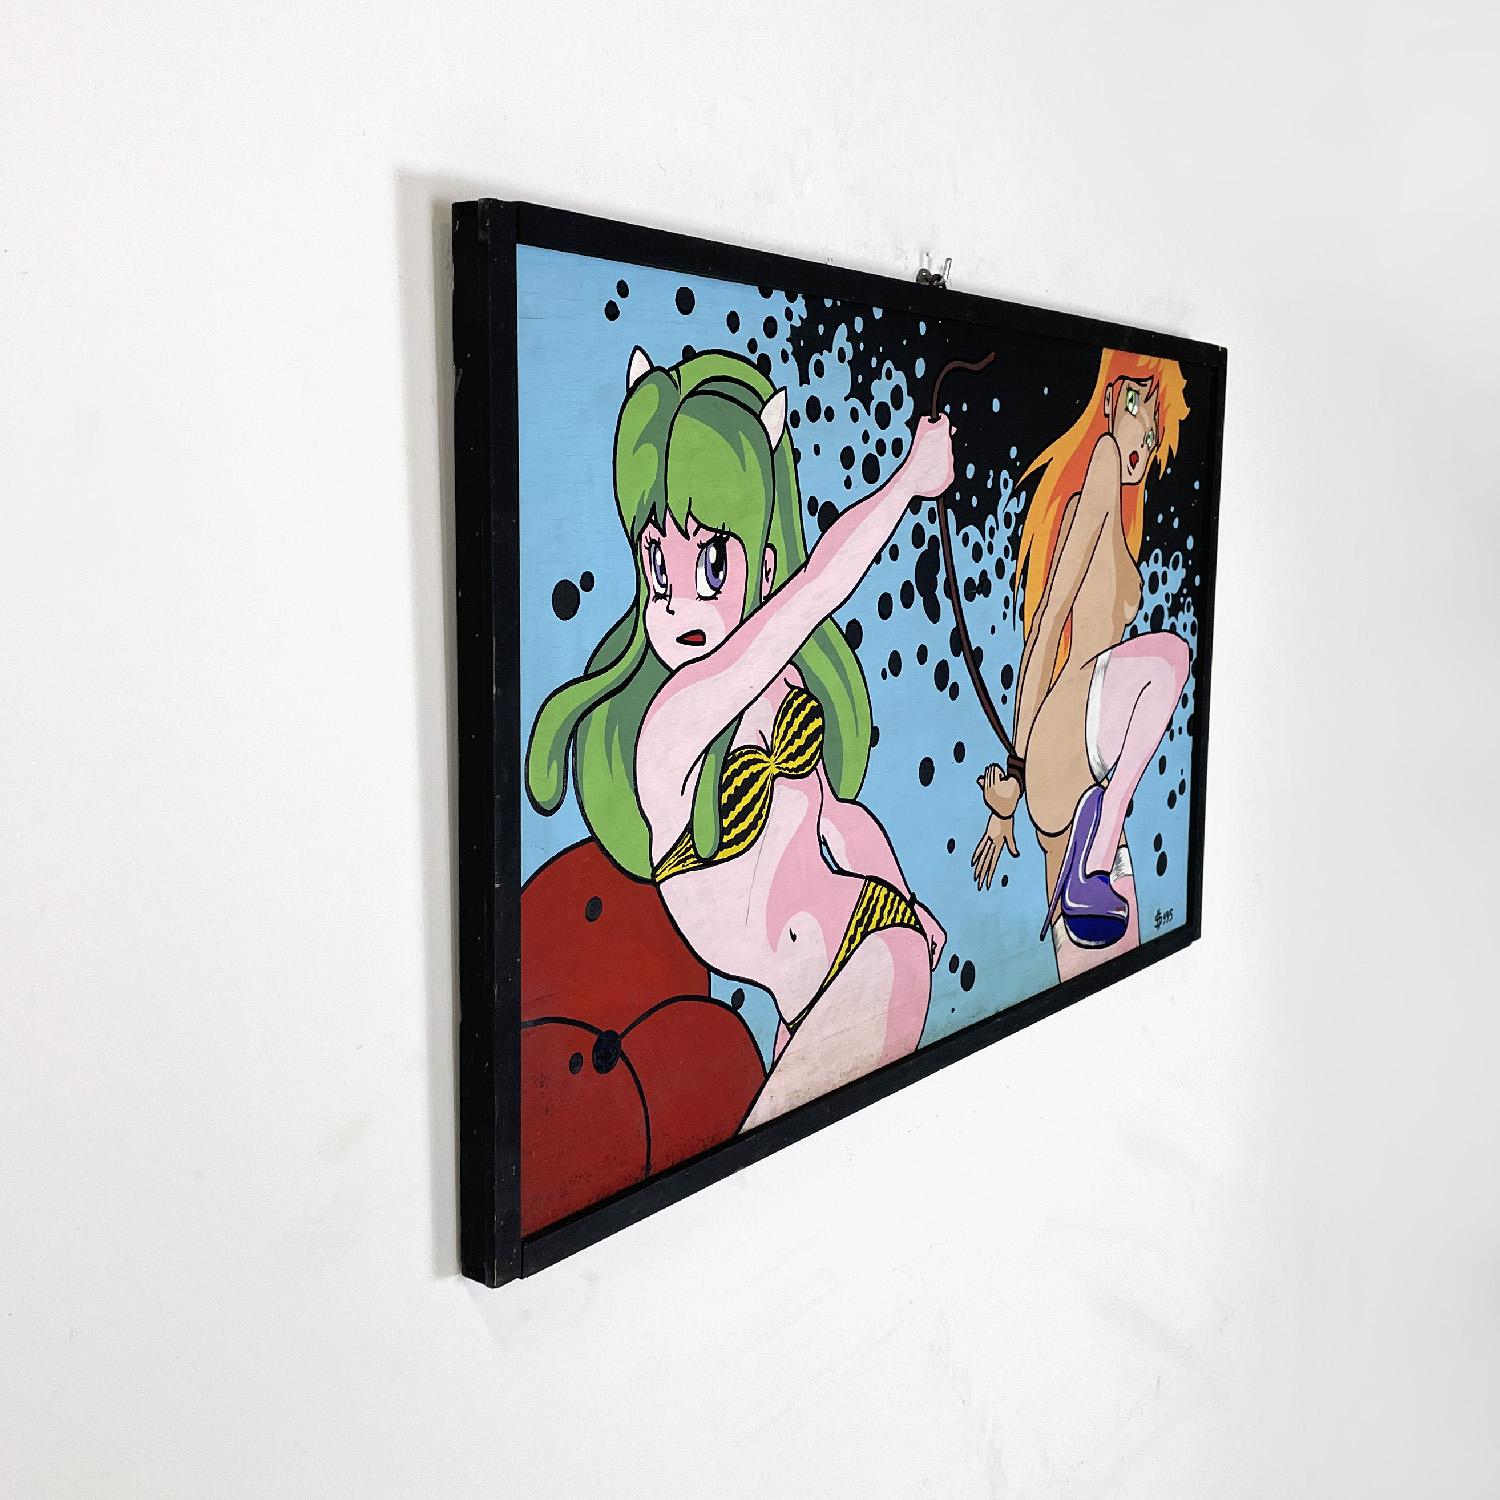 Italienisches modernes erotisches japanisches Manga-Gemälde von Gianni S99, 1990er Jahre
Acrylgemälde auf Karton mit einem erotischen Thema, das ikonische Figuren aus der japanischen Manga-Popkultur darstellt. Die Komposition zeichnet sich durch